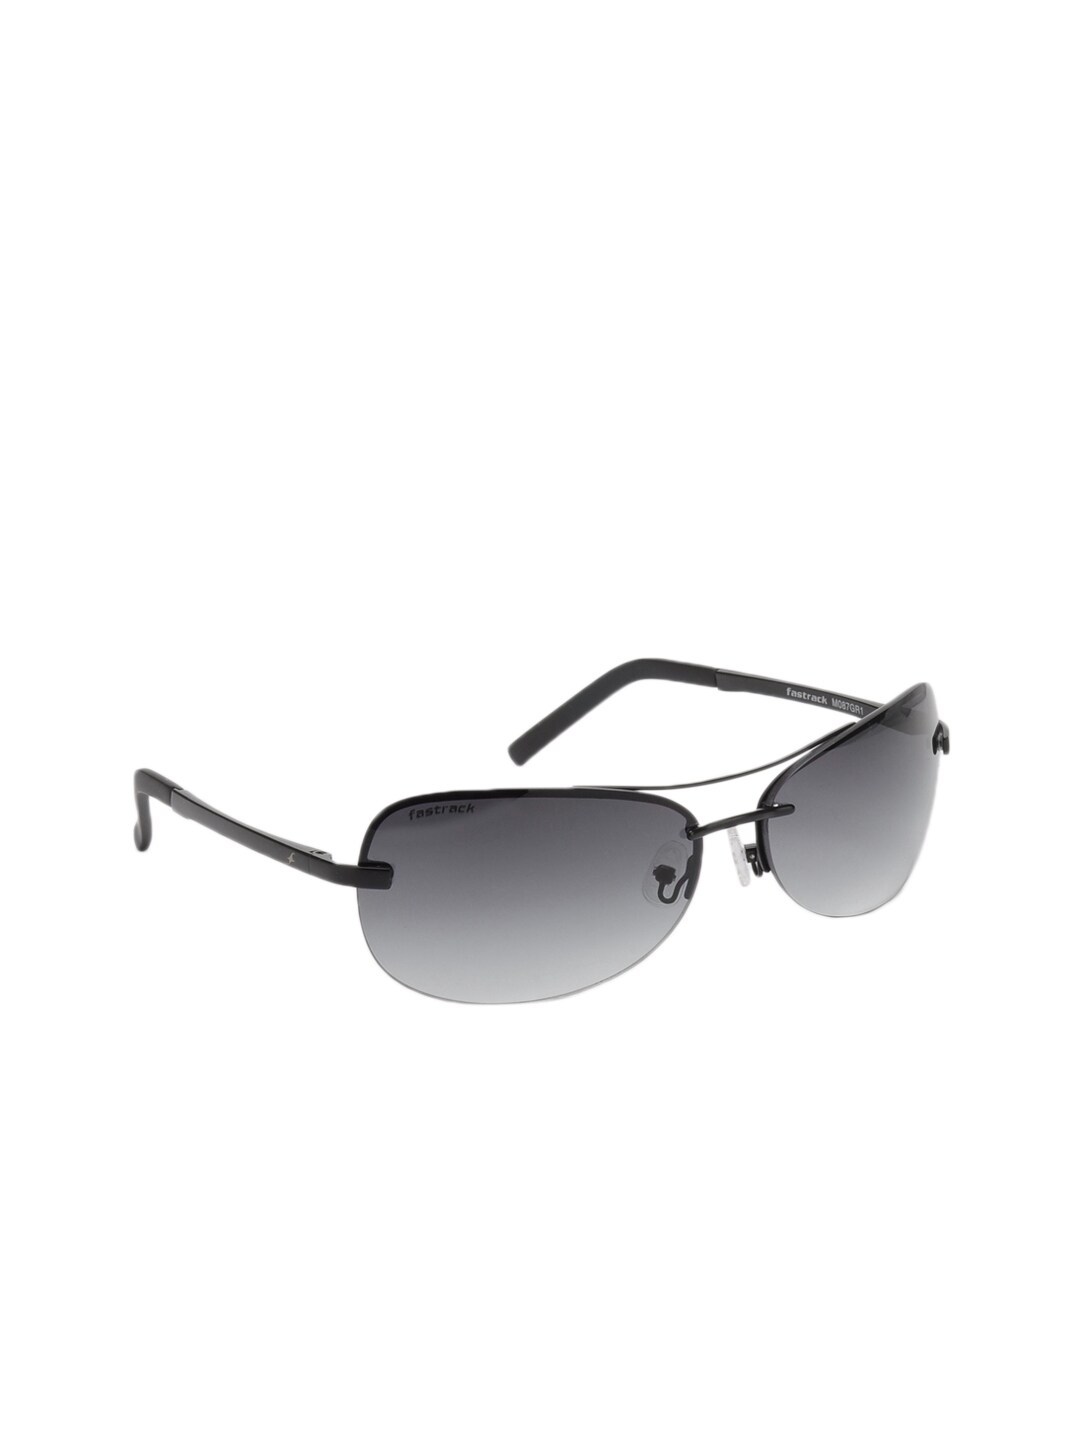 Fastrack Unisex Sunglasses